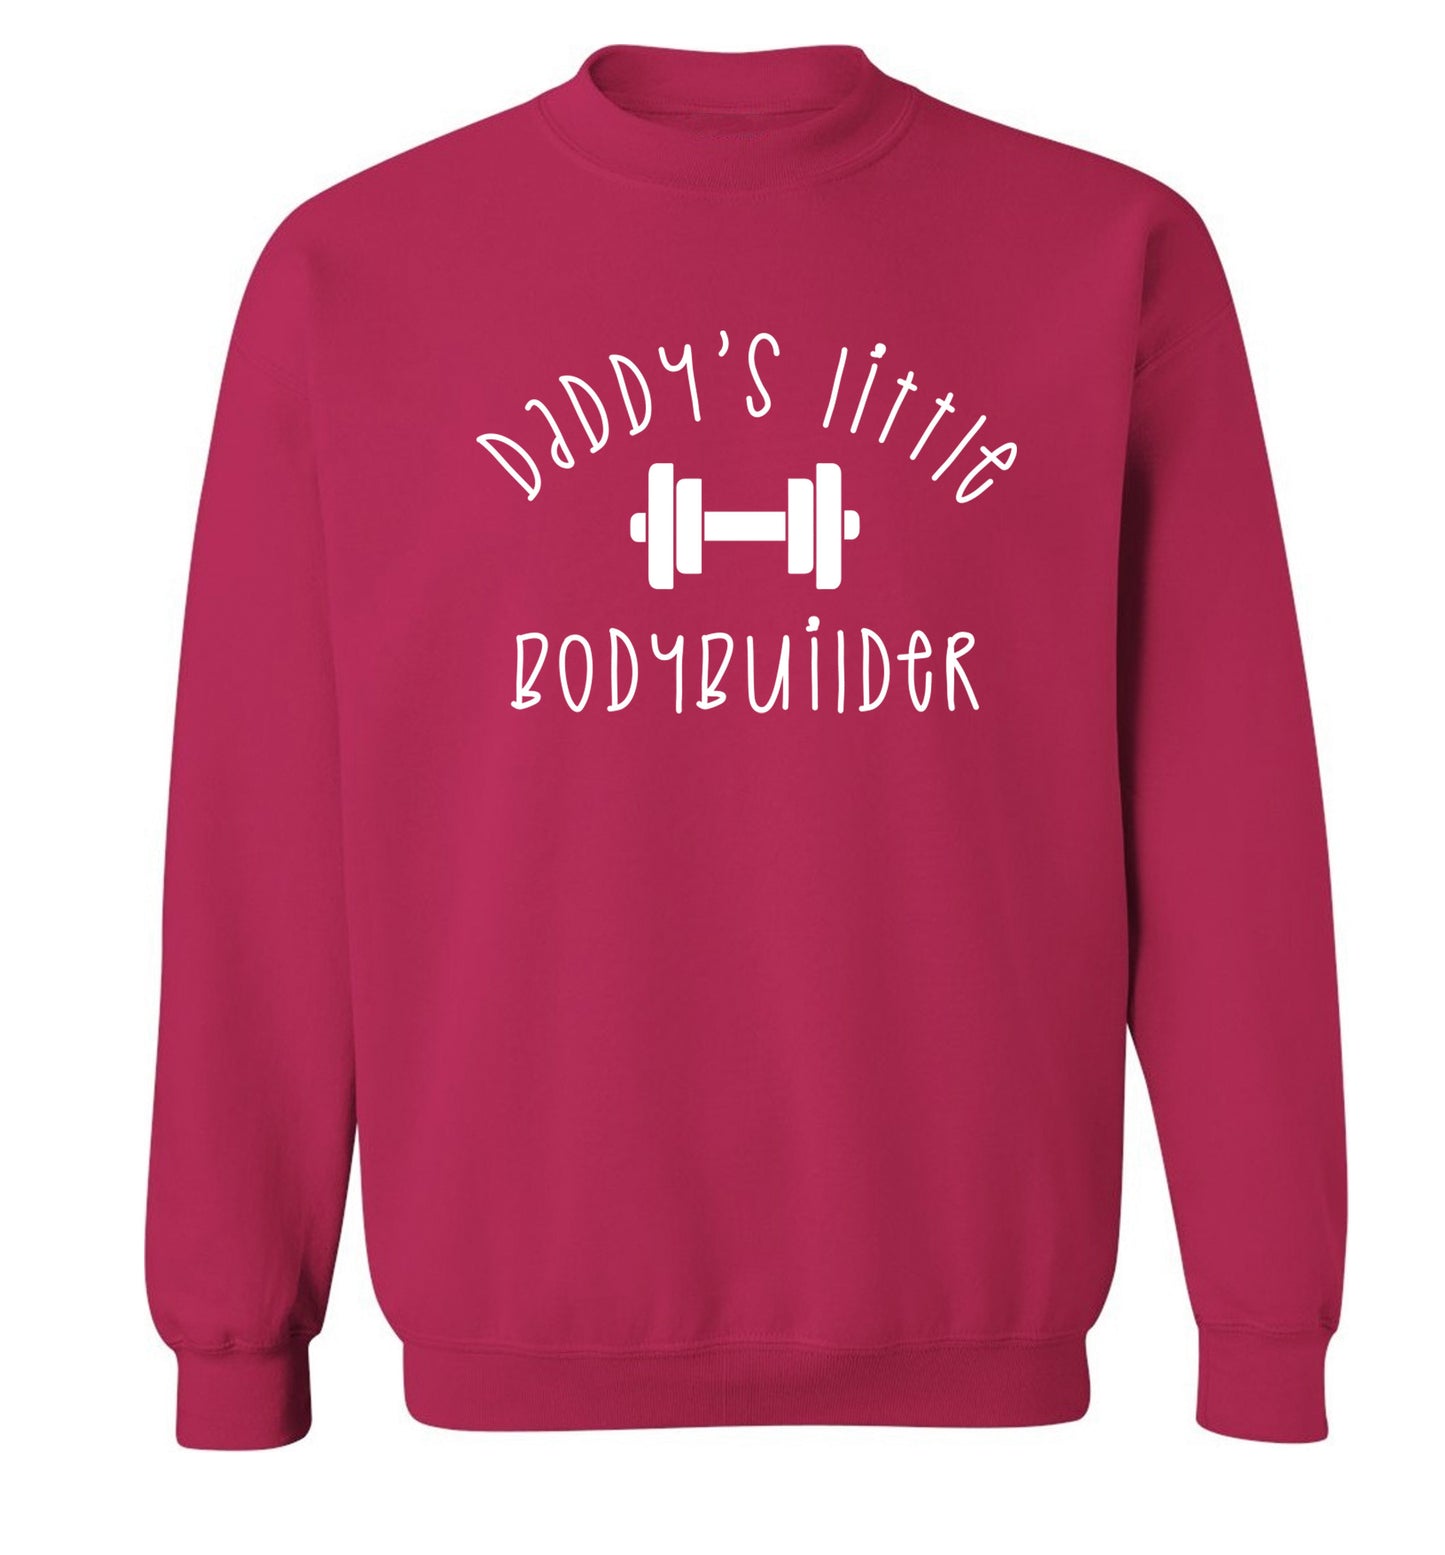 Daddy's little bodybuilder Adult's unisex pink Sweater XL